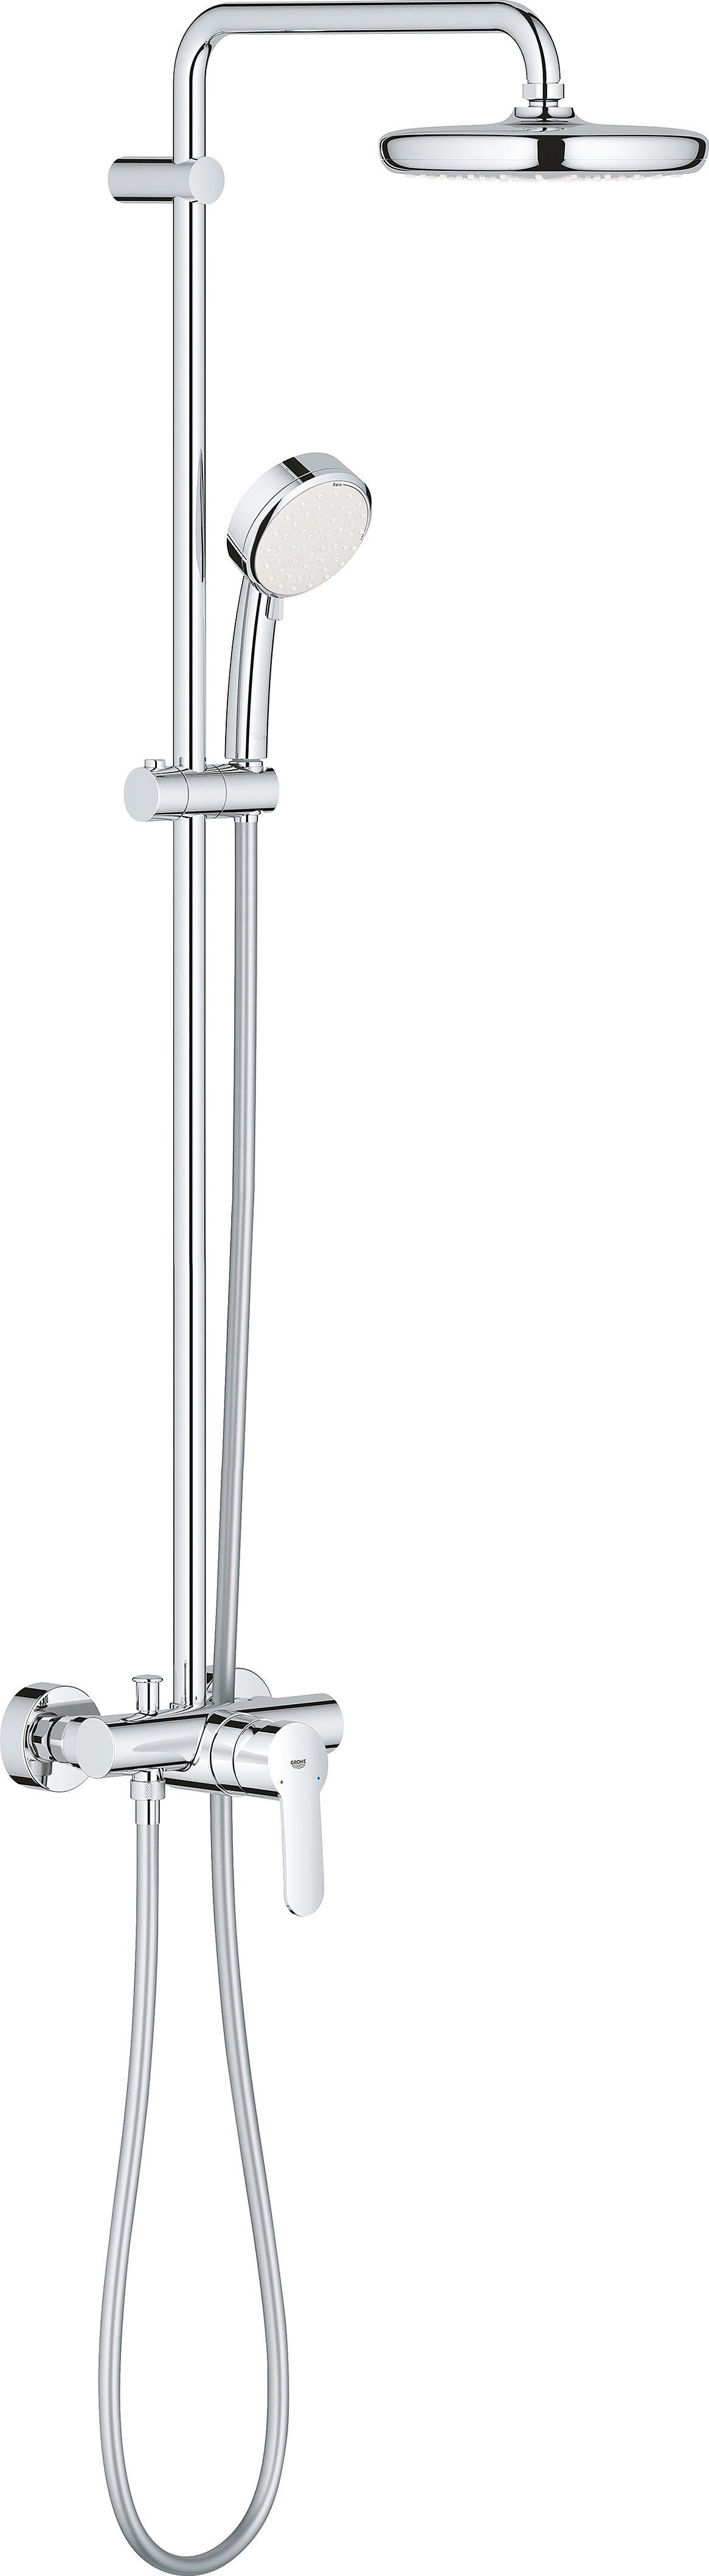 Grohe Duschsystem Tempesta Cosmopolitan, Höhe 102,8 cm, 1 Strahlart(en), Packung, mit langlebieger und scheinender Oberfläche | Brausegarnituren